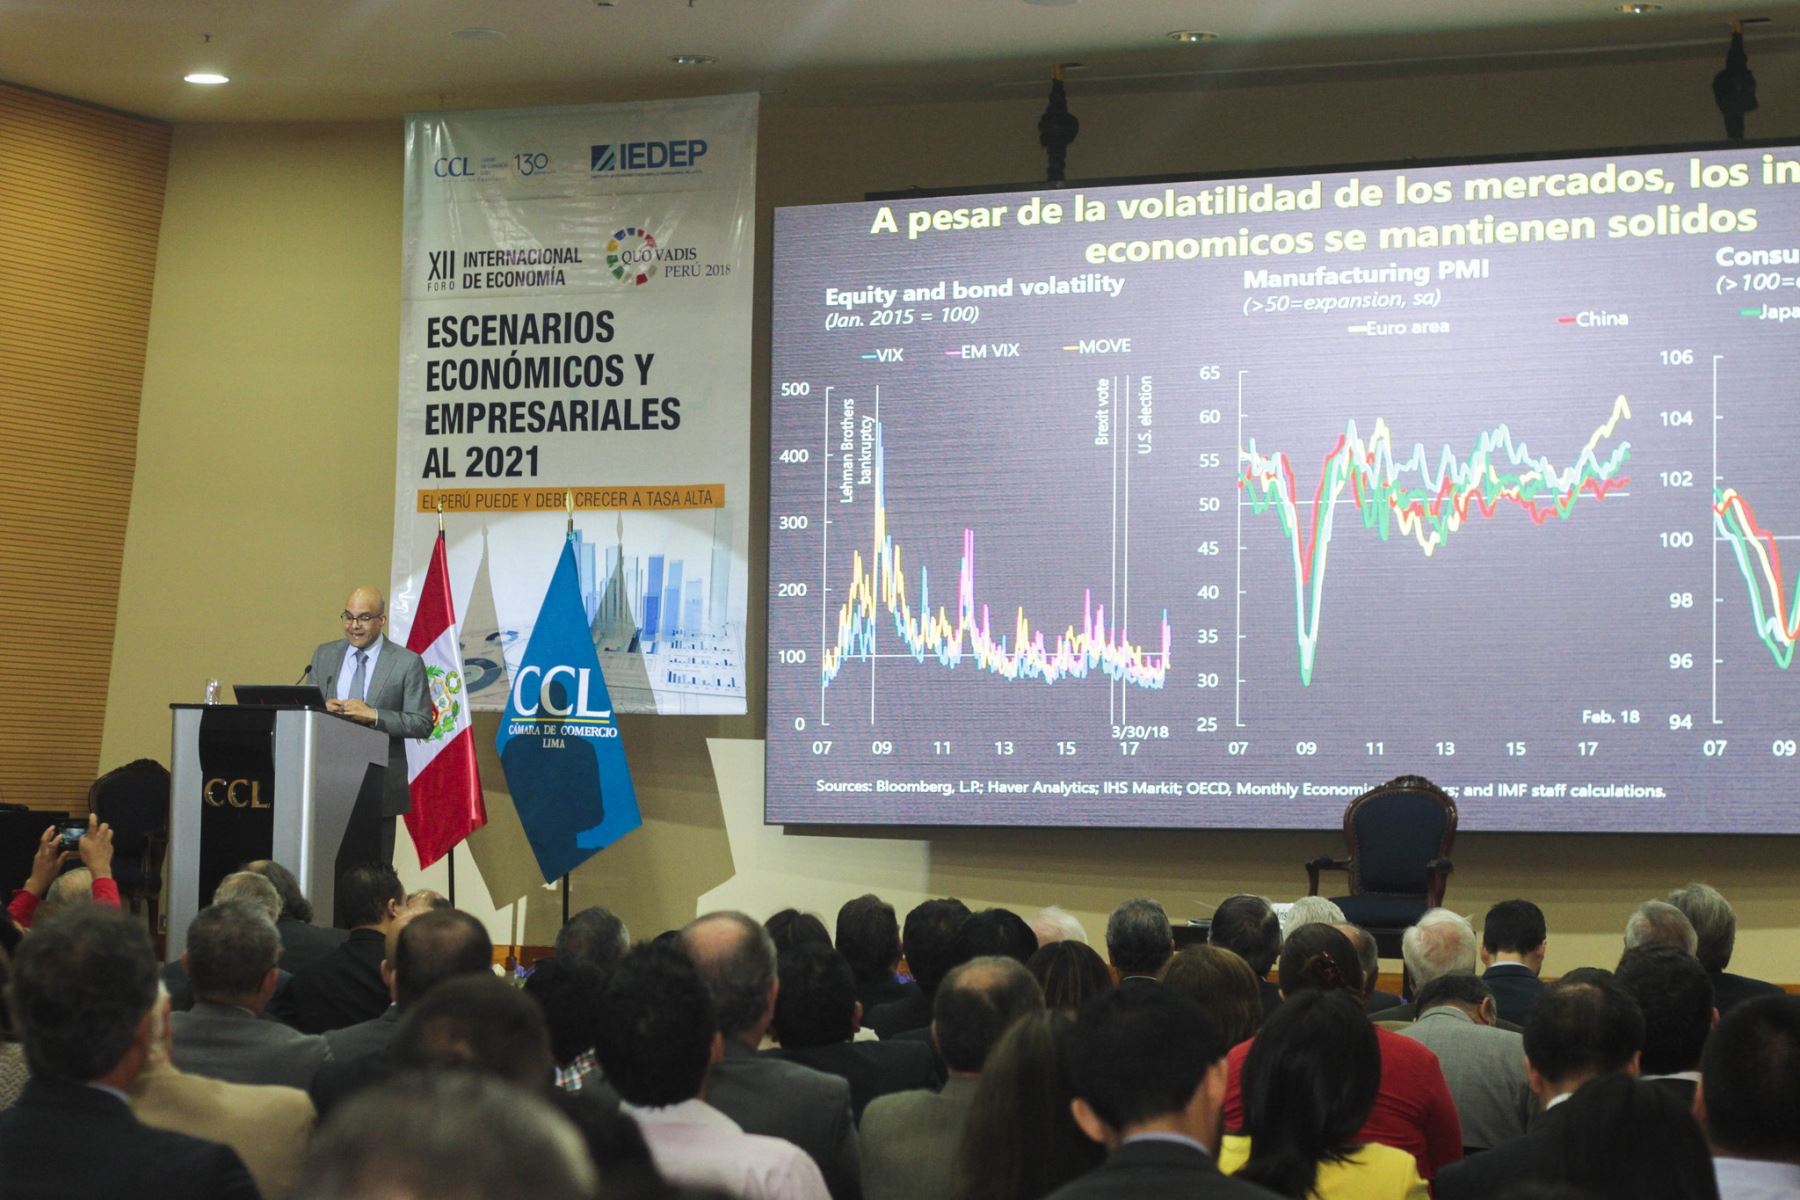 El jefe de la misión para Perú del FMI, Ravi Balakrishnan, expone recomendaciones. Foto: Cortesía CCL.